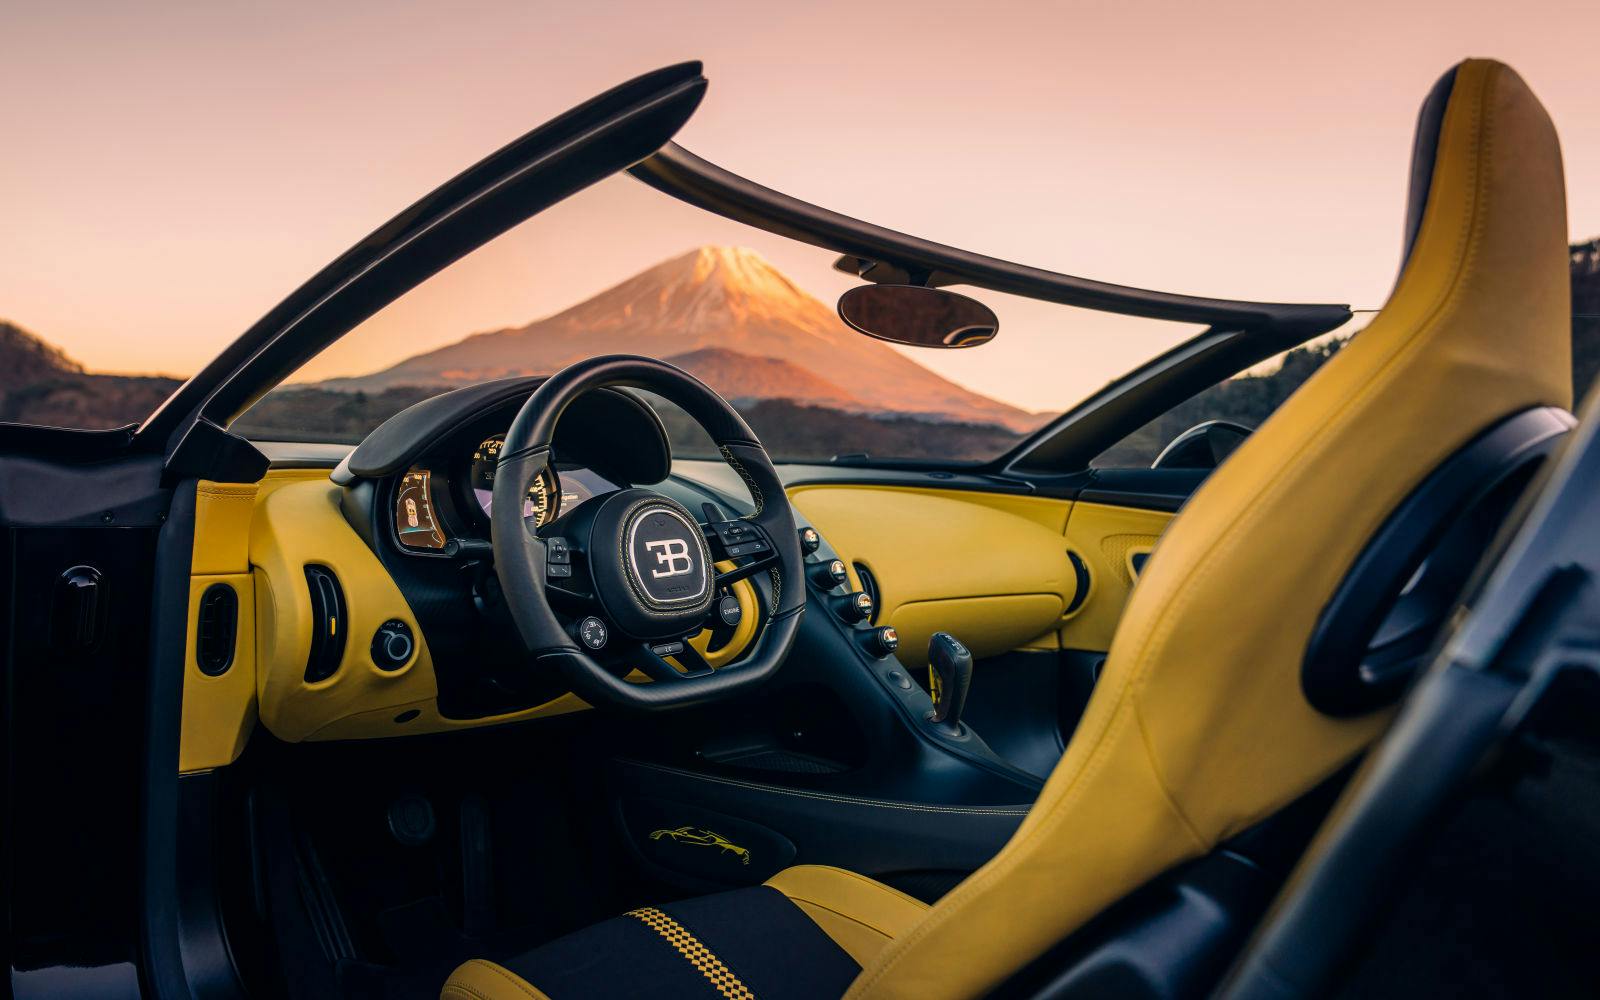 Das schwarz-gelbe Interieur des W16 Mistral verweist auf die Lieblingsfarben von Ettore Bugatti.